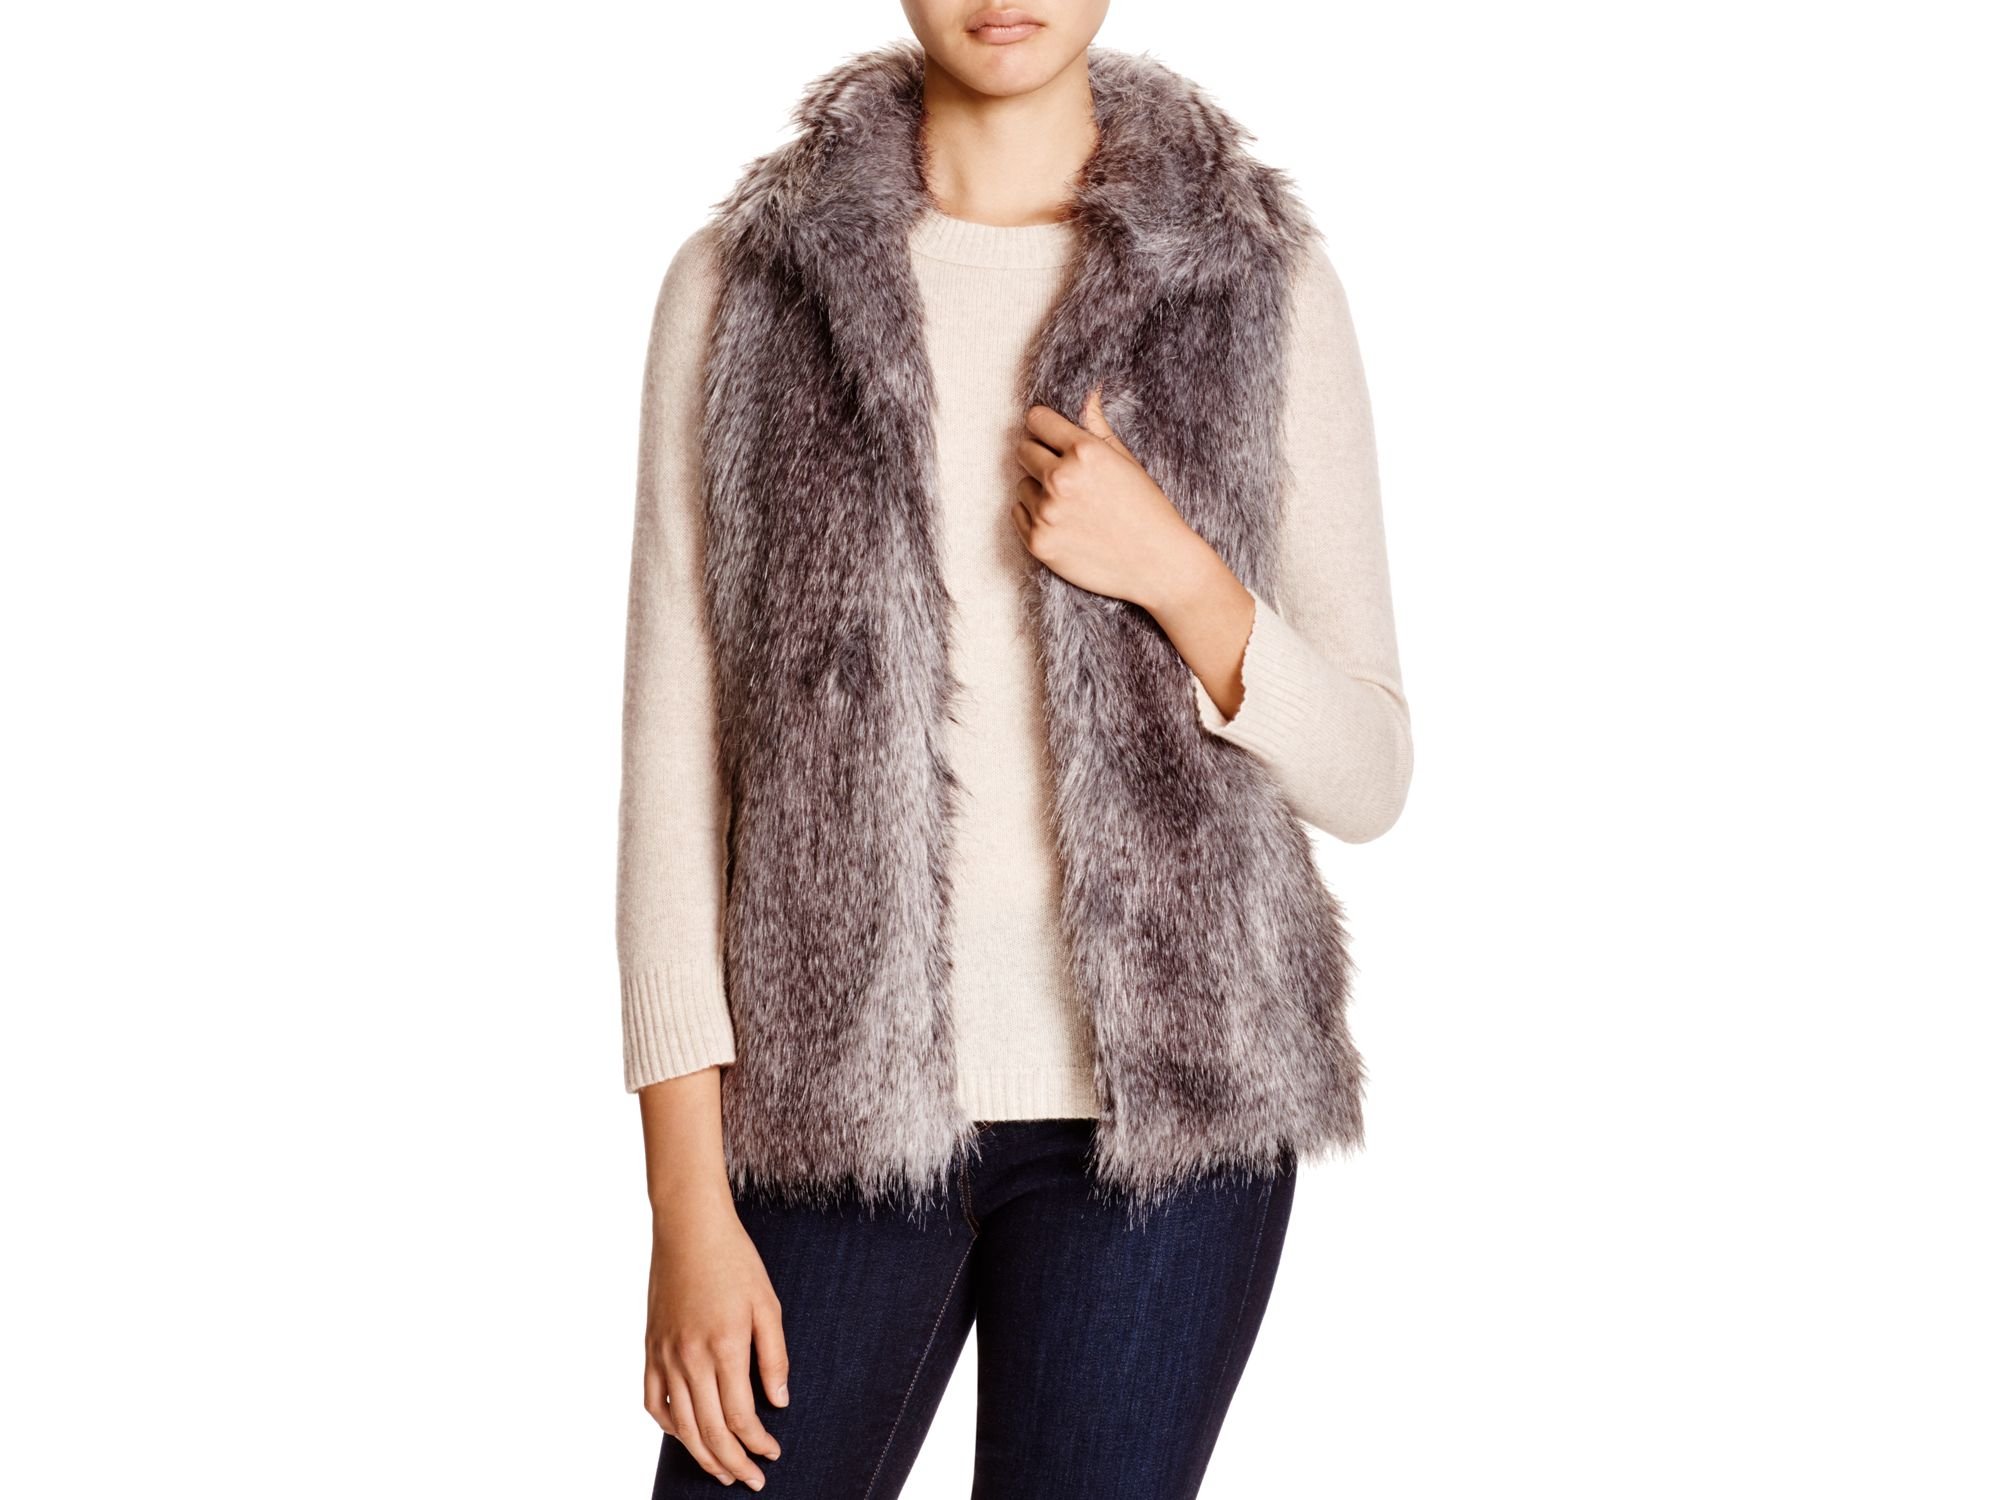 Calvin Klein Faux Fur Vests Clearance, SAVE 60%.